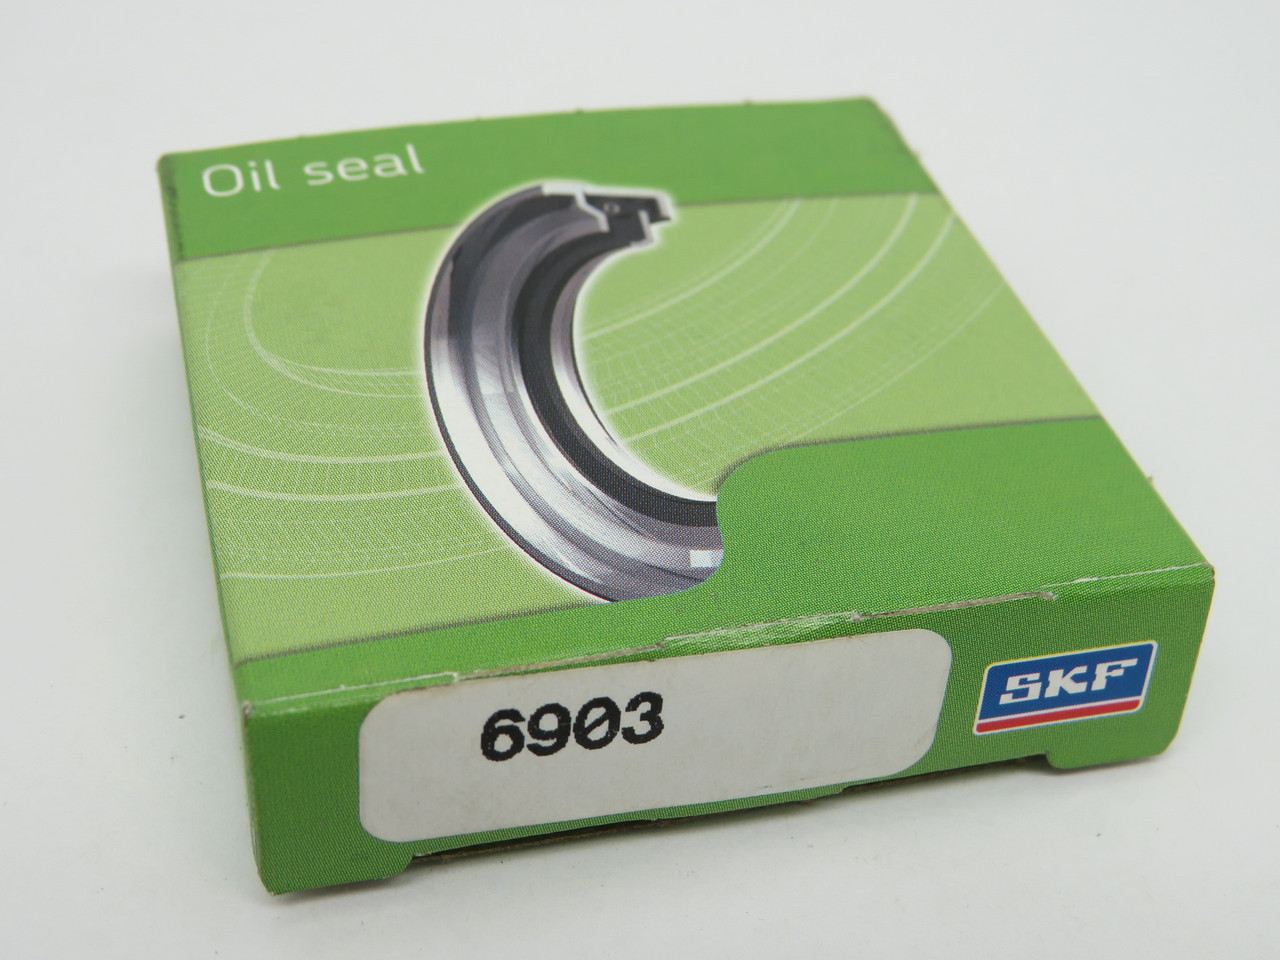 SKF 6903 Oil Seal 0.625" ID 1.124" OD 0.250" W ! NEW !